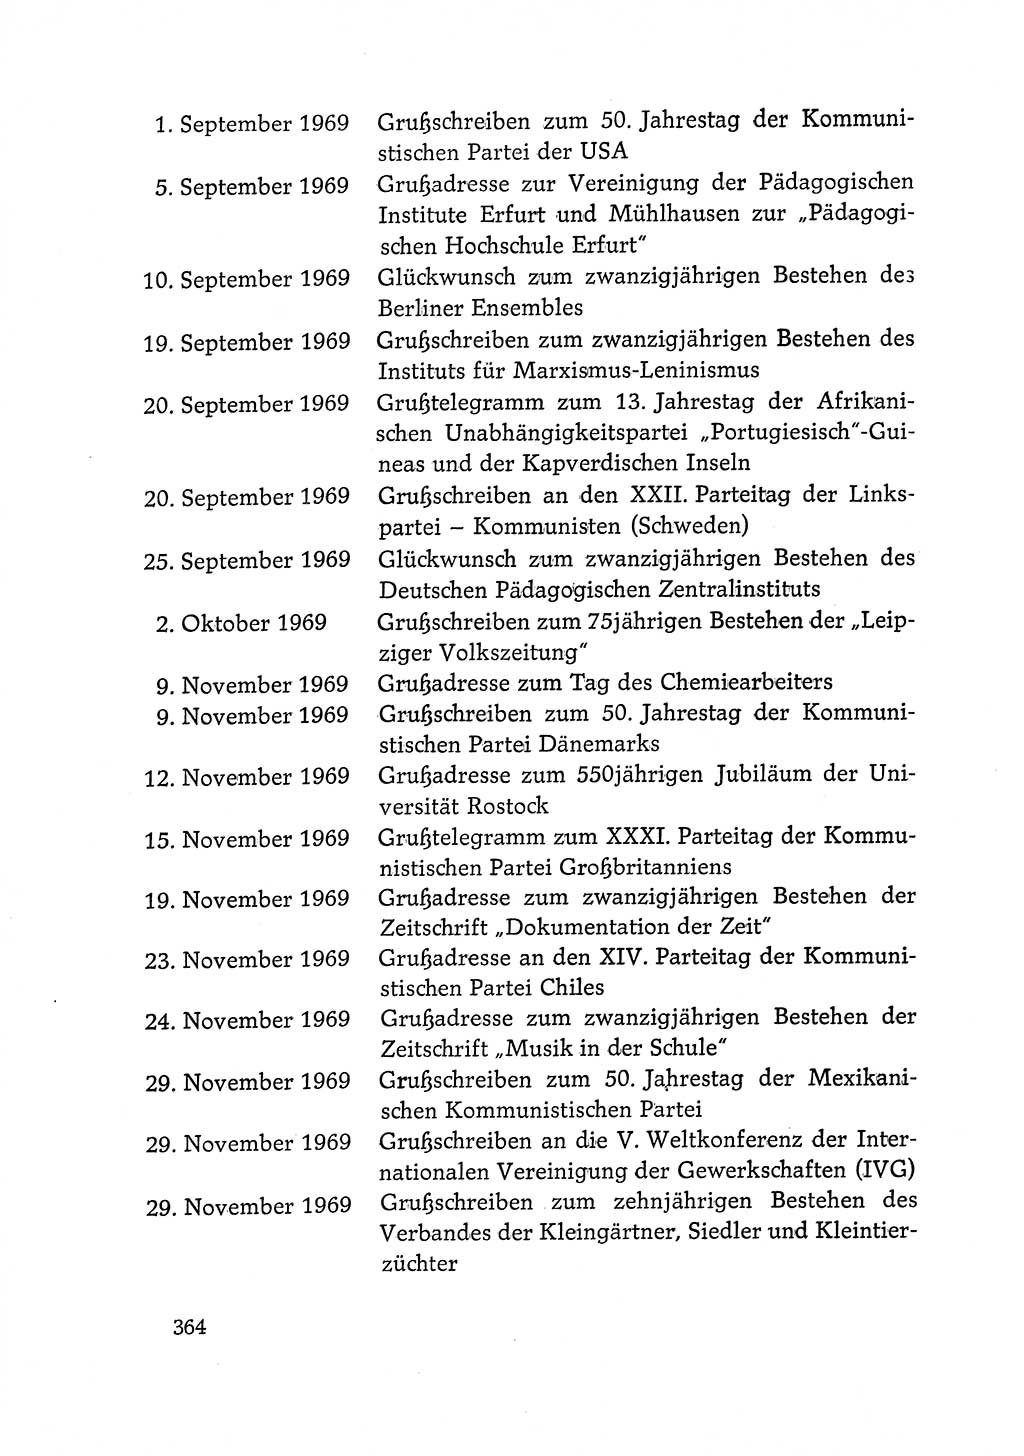 Dokumente der Sozialistischen Einheitspartei Deutschlands (SED) [Deutsche Demokratische Republik (DDR)] 1968-1969, Seite 364 (Dok. SED DDR 1968-1969, S. 364)